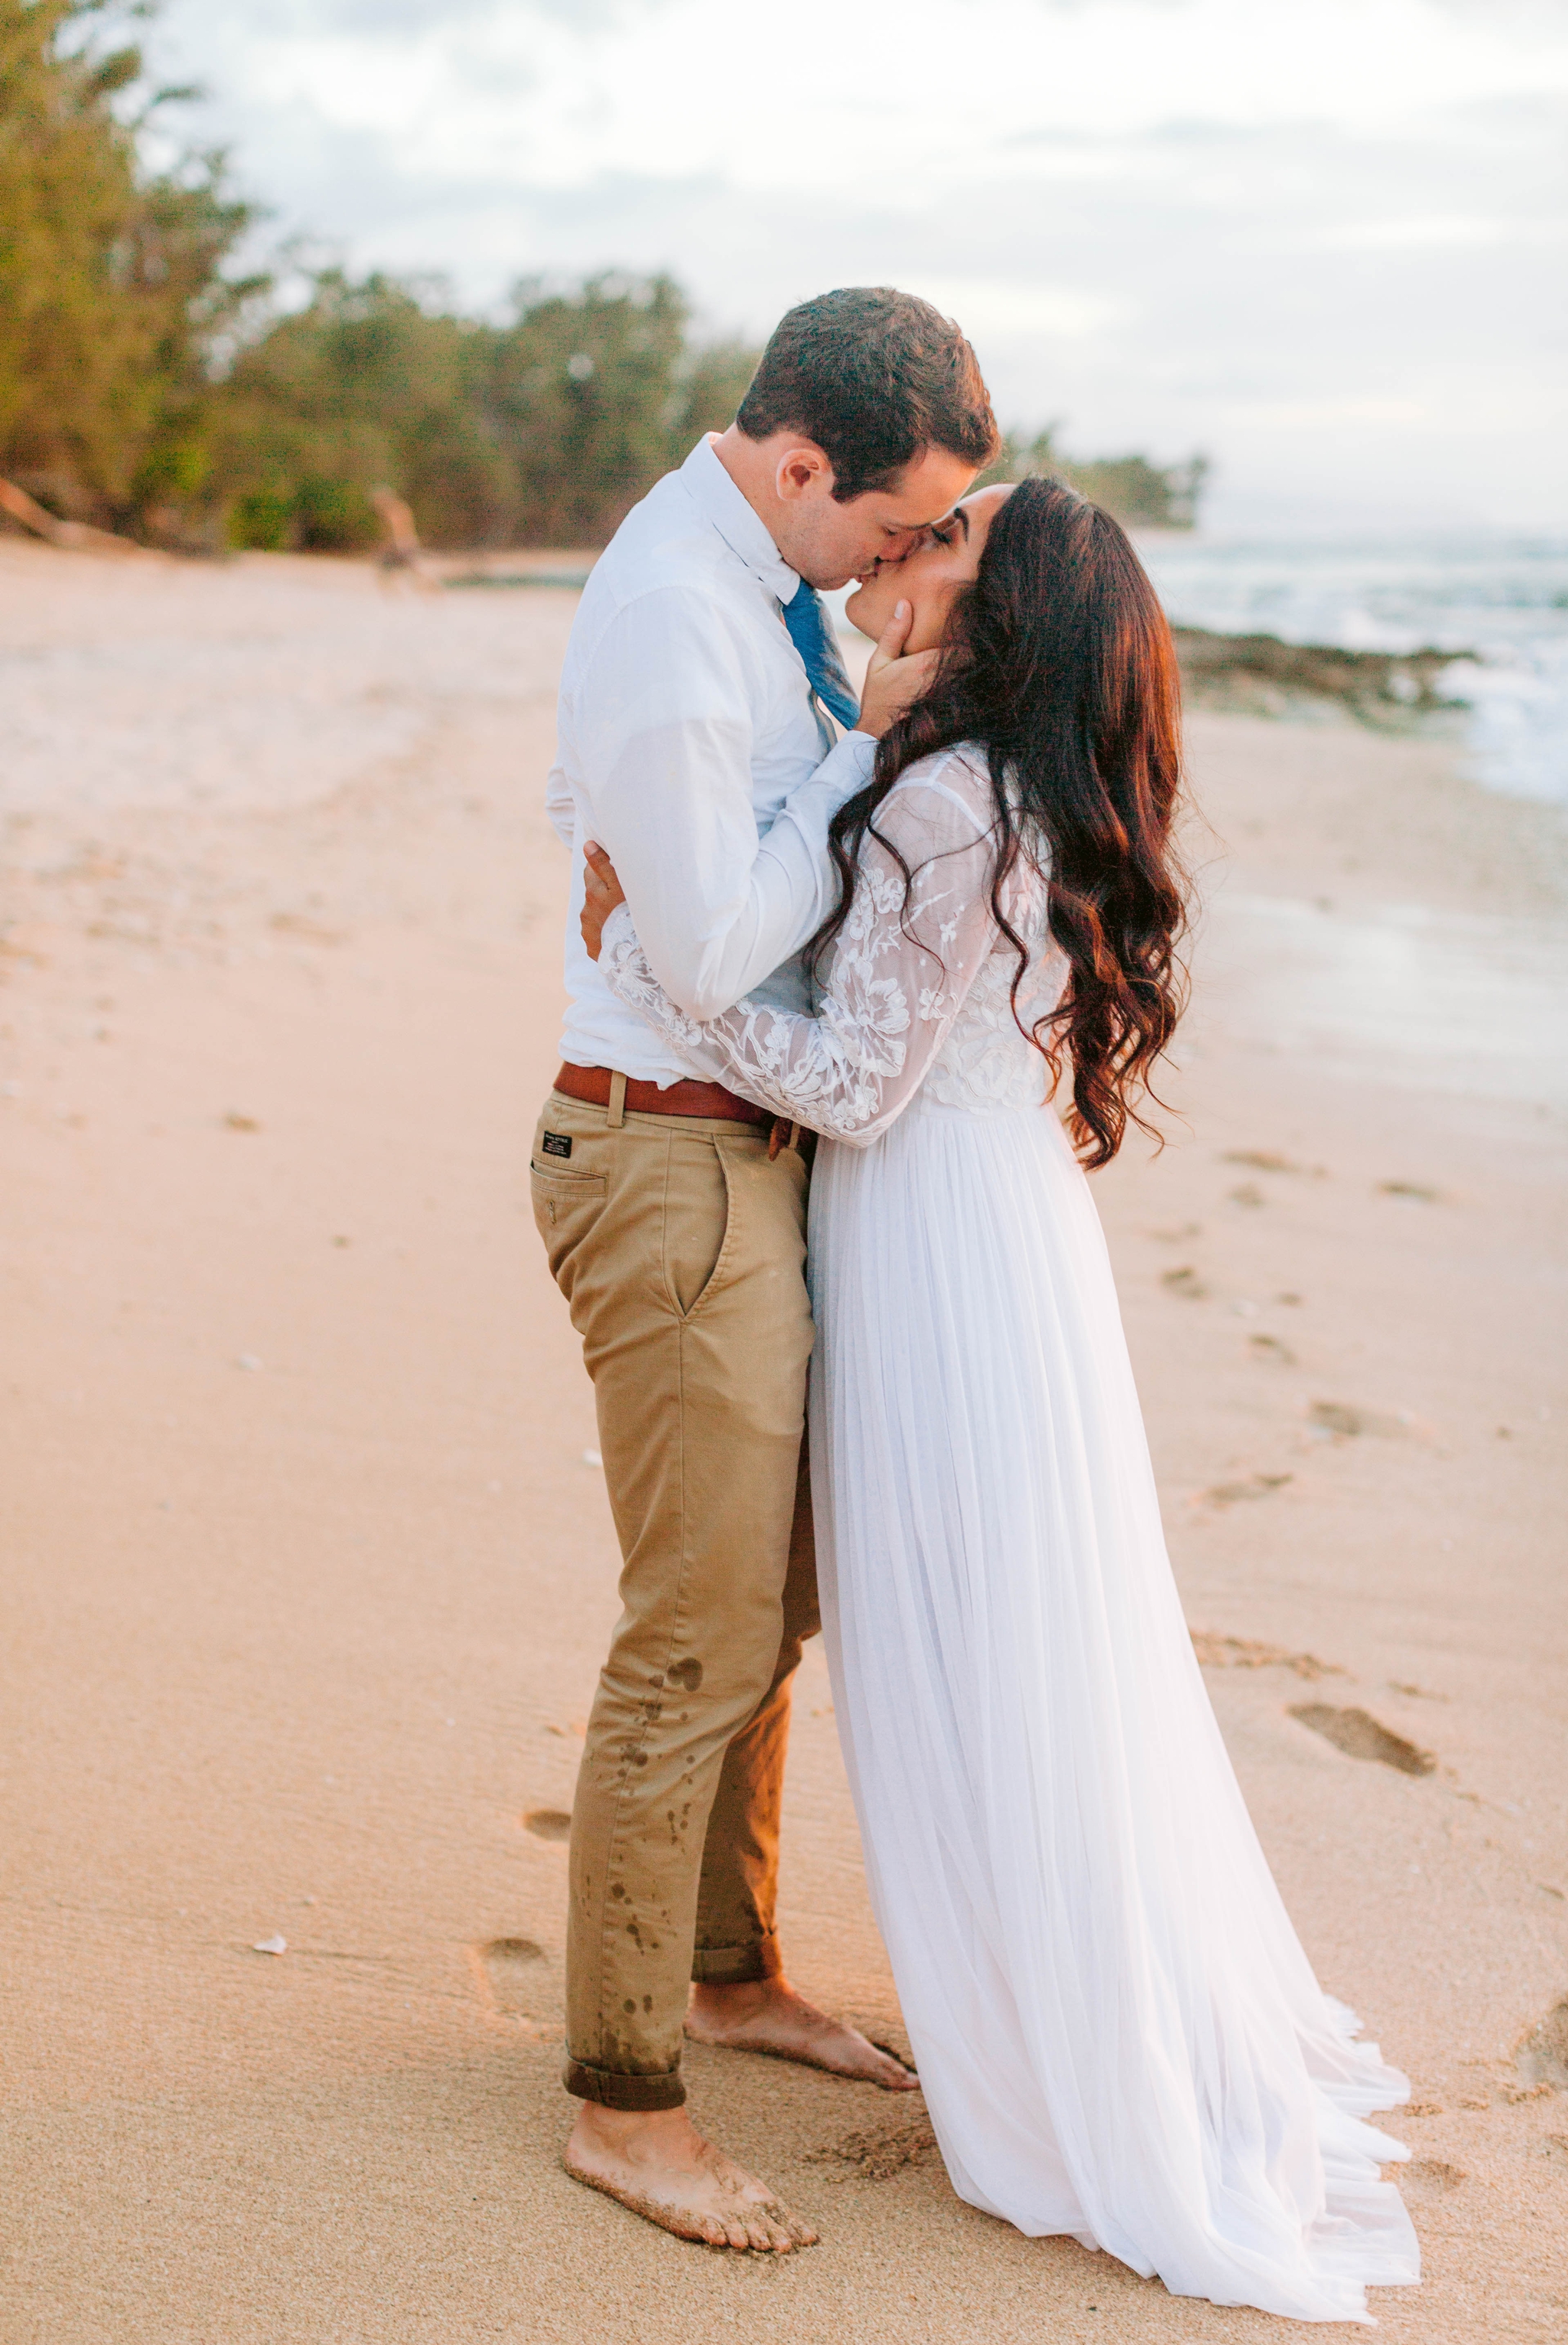  Bride and Groom kissing - Wedding Portraits at Sunset in Hawaii - Ana + Elijah - Wedding at Loulu Palm in Haleiwa, HI - Oahu Hawaii Wedding Photographer - #hawaiiweddingphotographer #oahuweddings #hawaiiweddings 